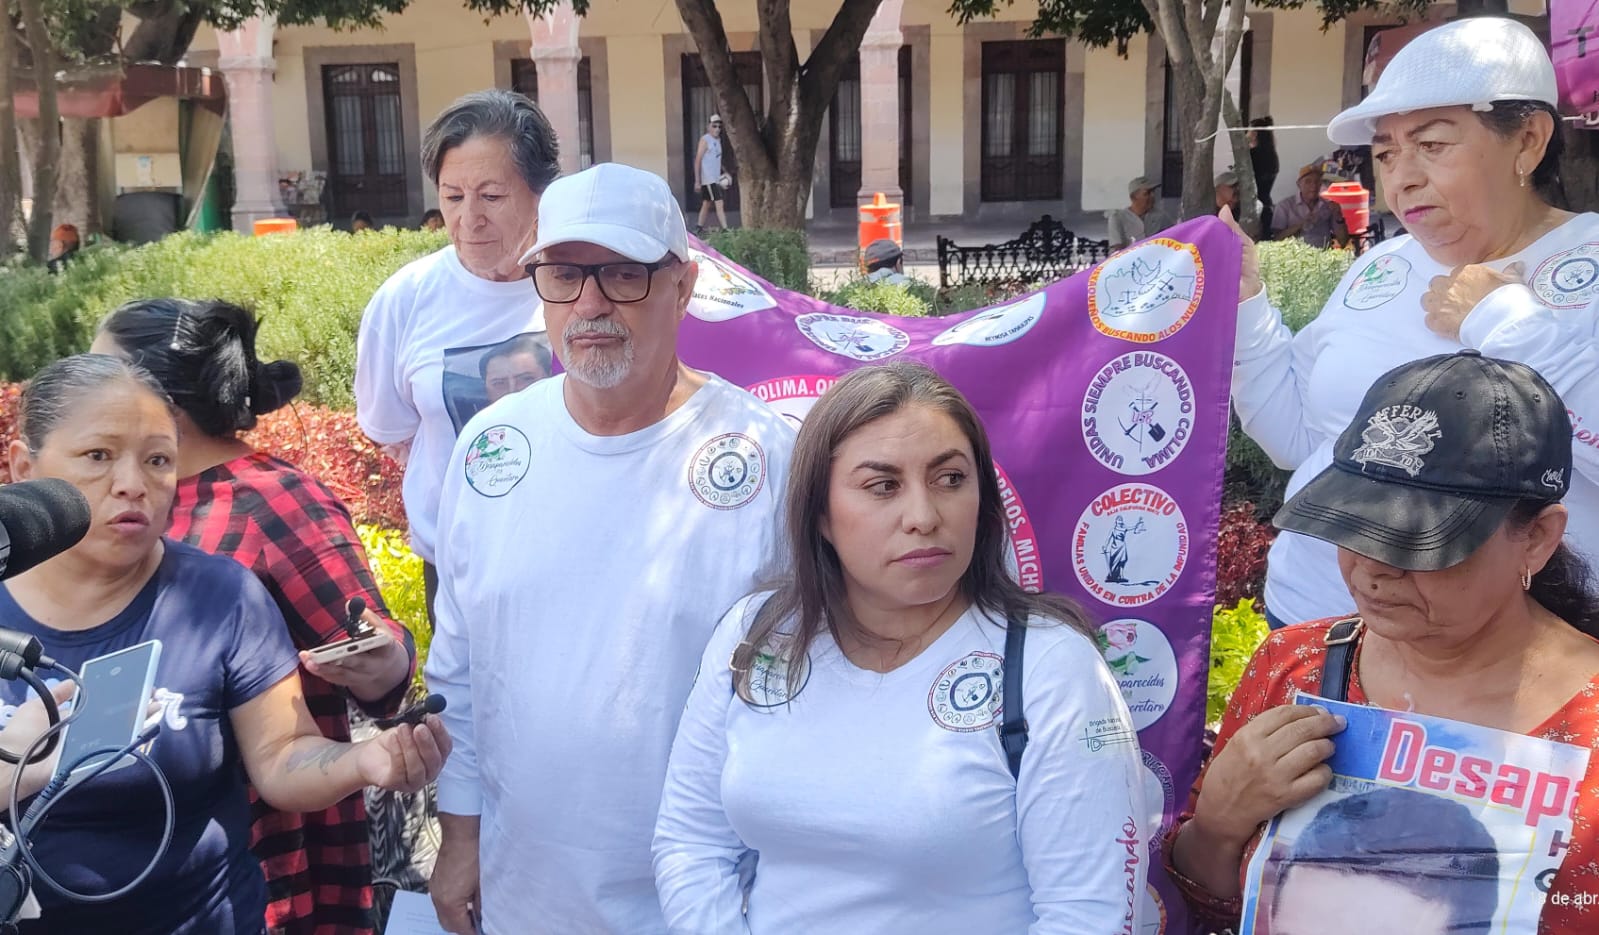 Colectivo de Desaparecidos Querétaro anunció acciones de búsqueda nacional